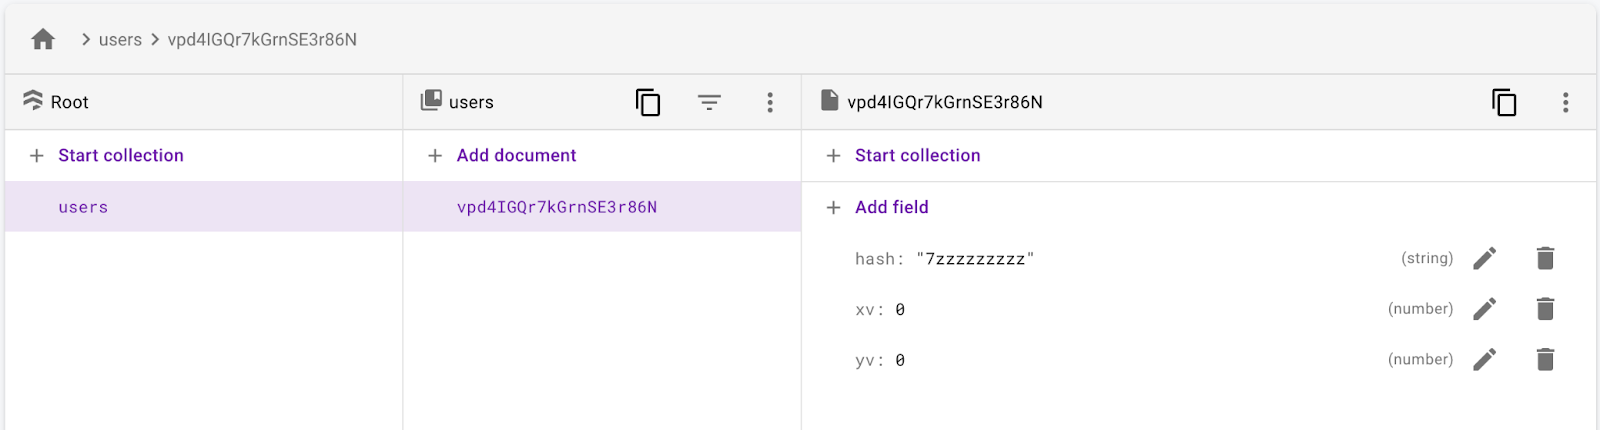 La collection des utilisateurs avec un document utilisateur ayant un champ xv, yv et hash.